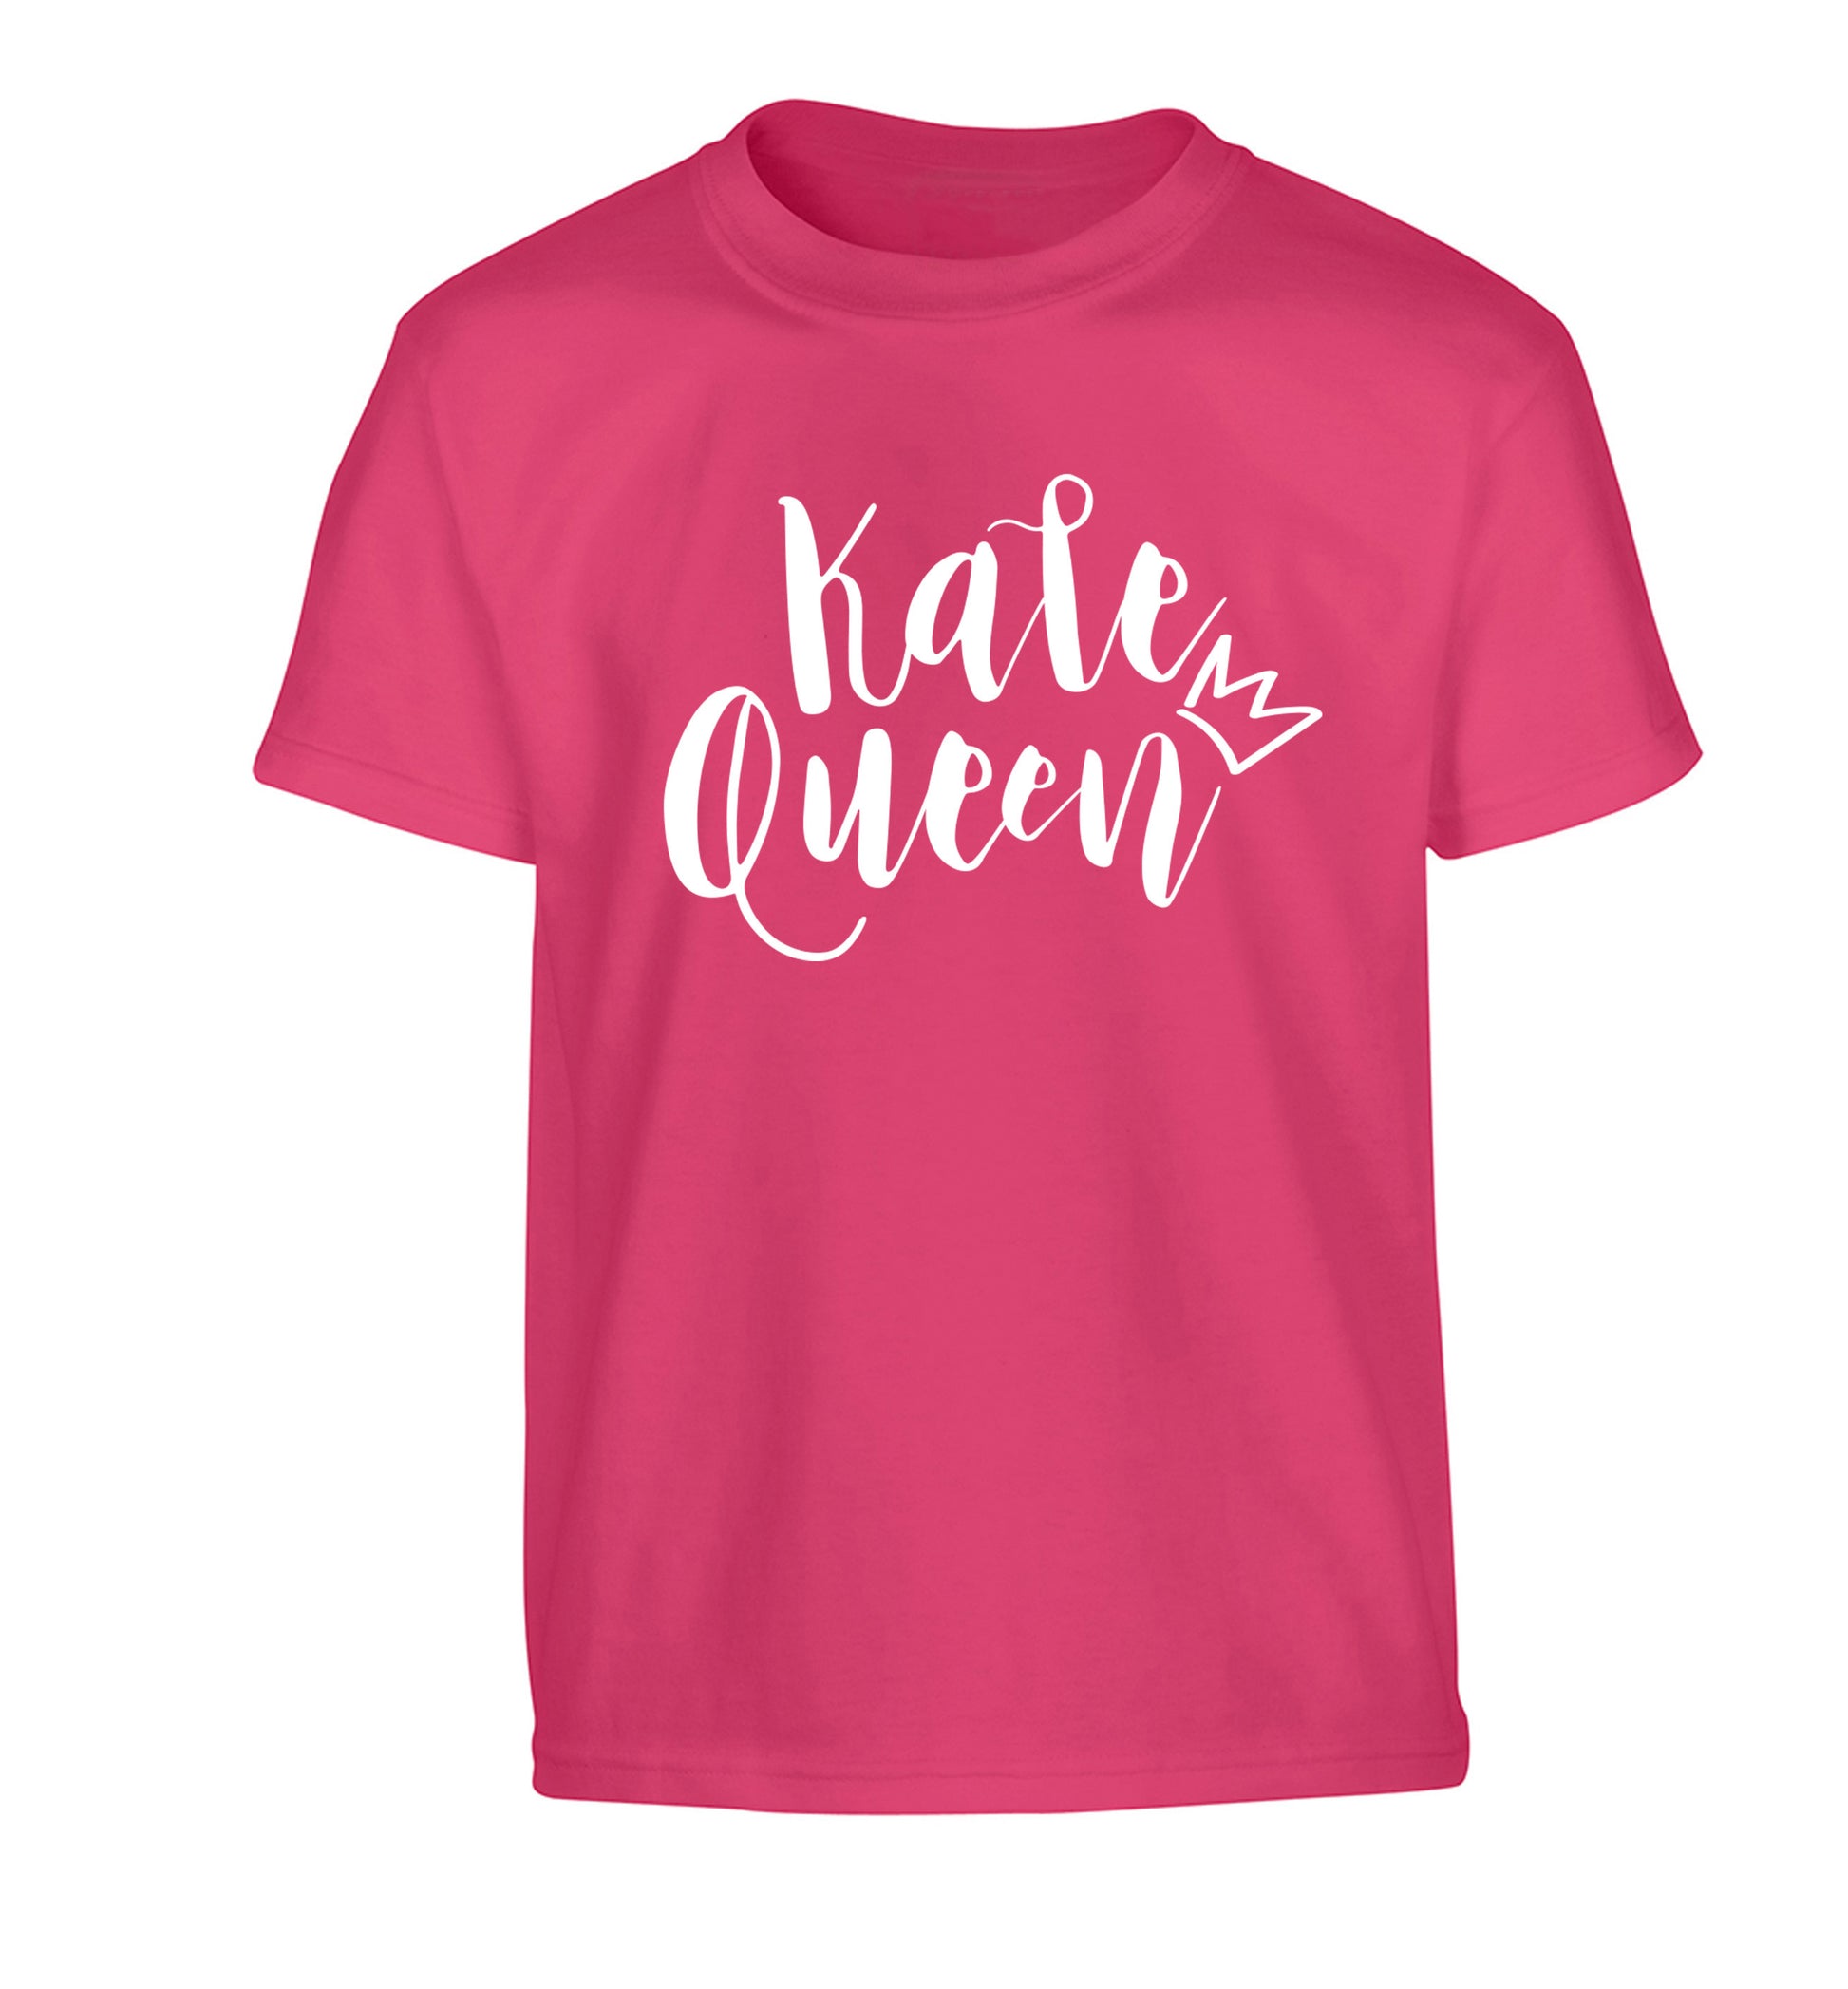 Kale Queen Children's pink Tshirt 12-14 Years